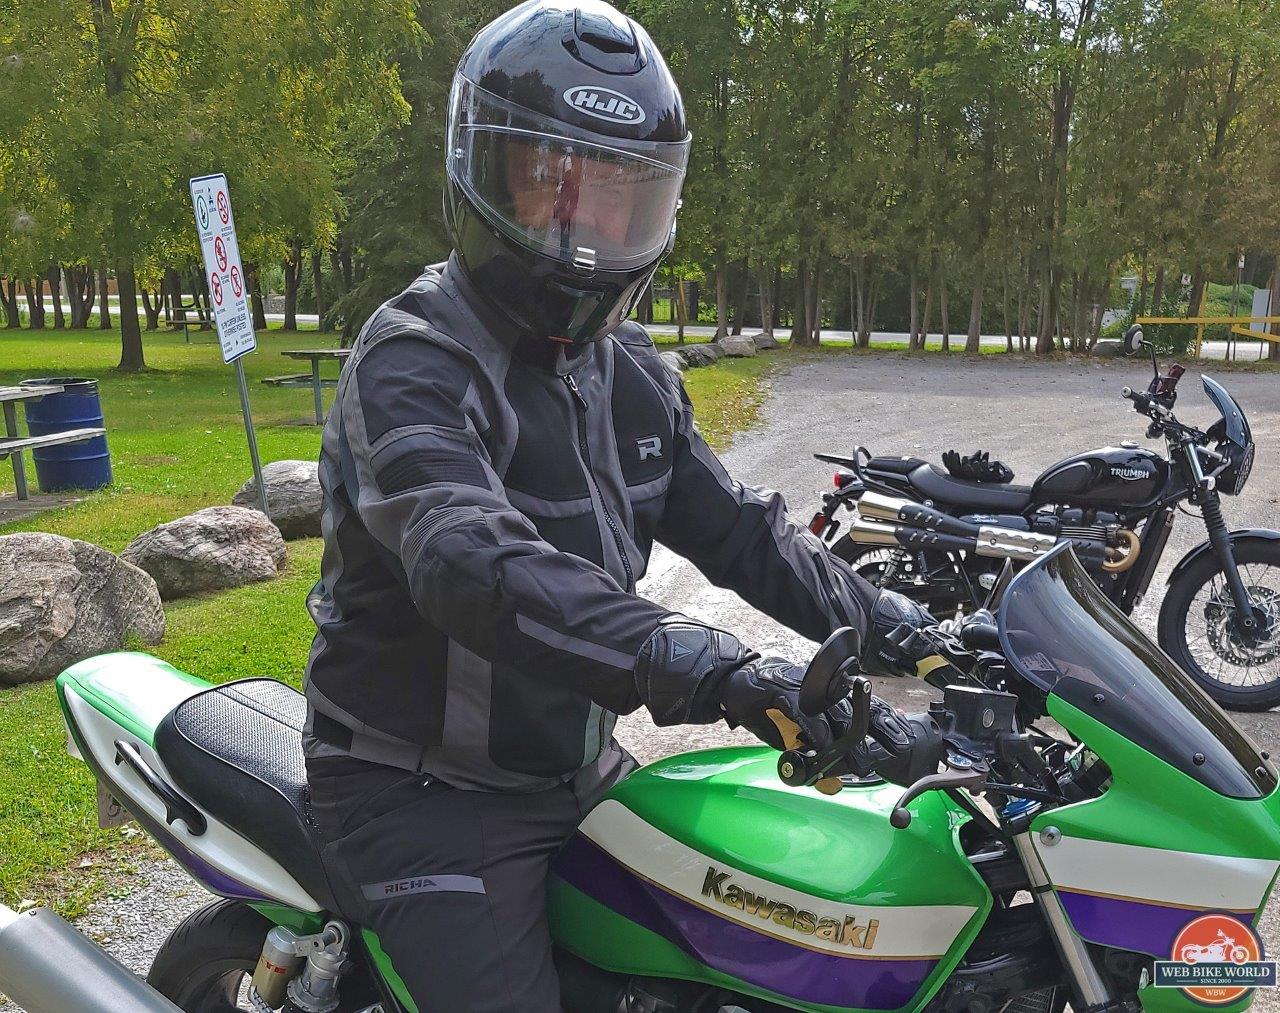 Man wearing the Richa Airstorm WP Jacket while sitting on green Kawasaki motorcycle